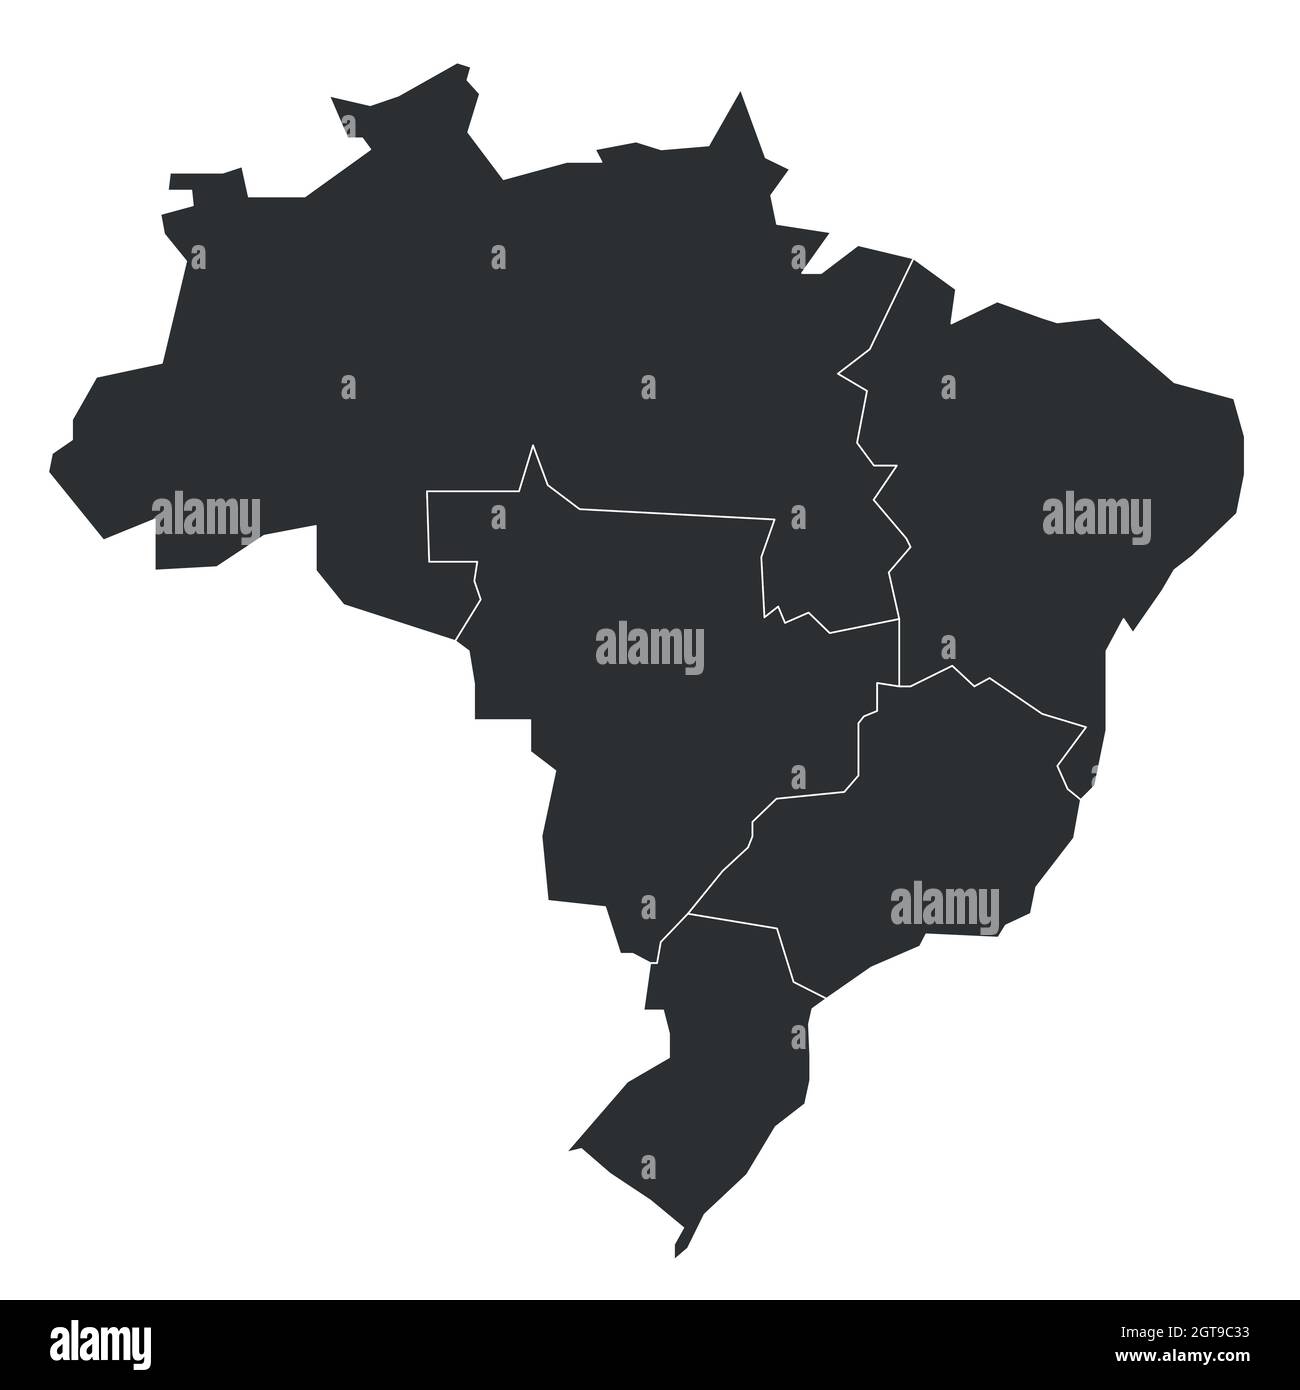 Politische Landkarte von Brasilien. Staaten teilen sich nach Farbe in 5 Regionen auf. Einfache leere Vektorkarte. Stock Vektor